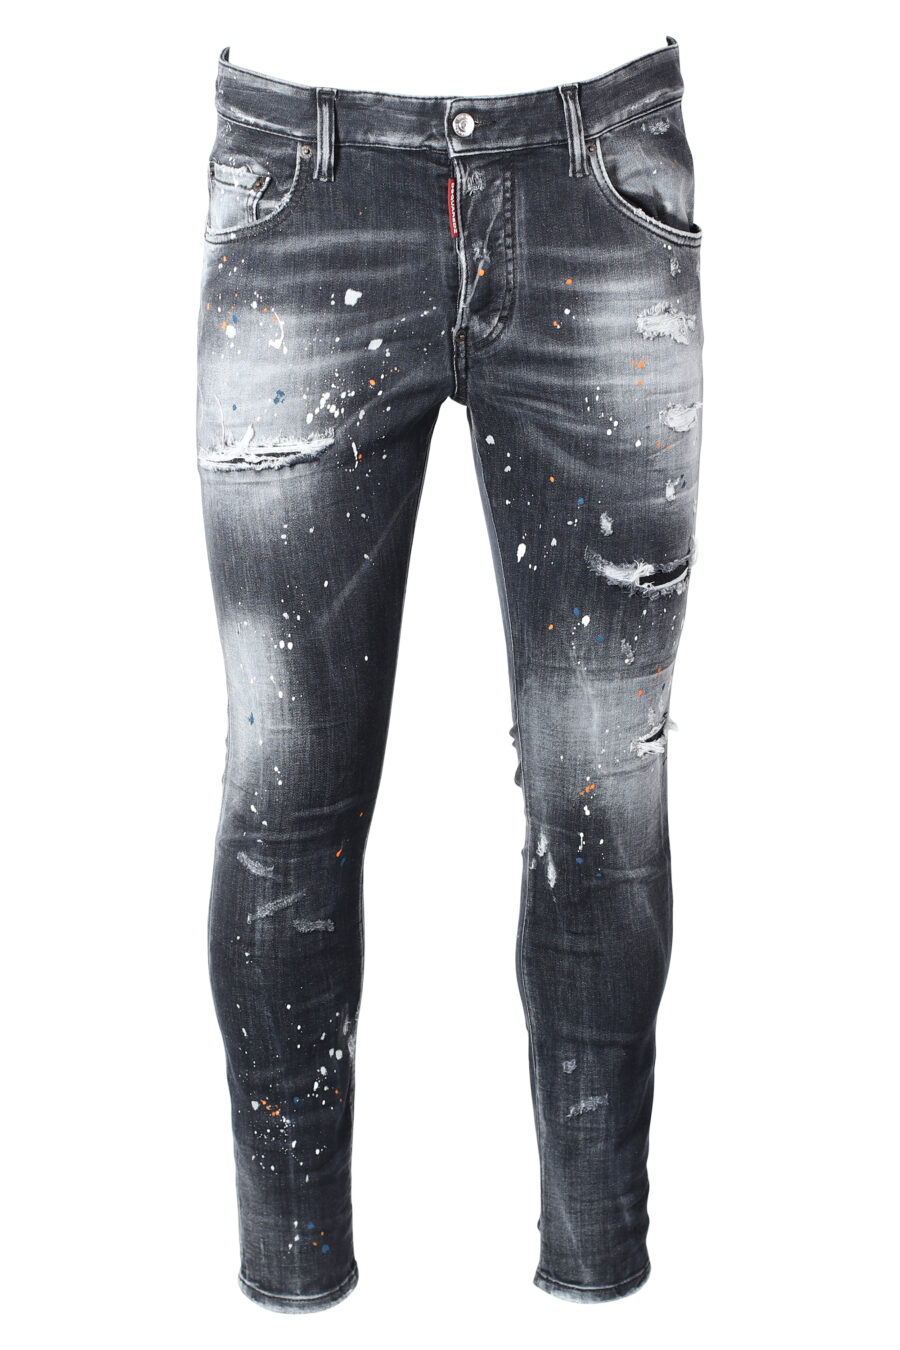 Pantalón vaquero negro "super twinky jean" desgastado y rotos - IMG 9888